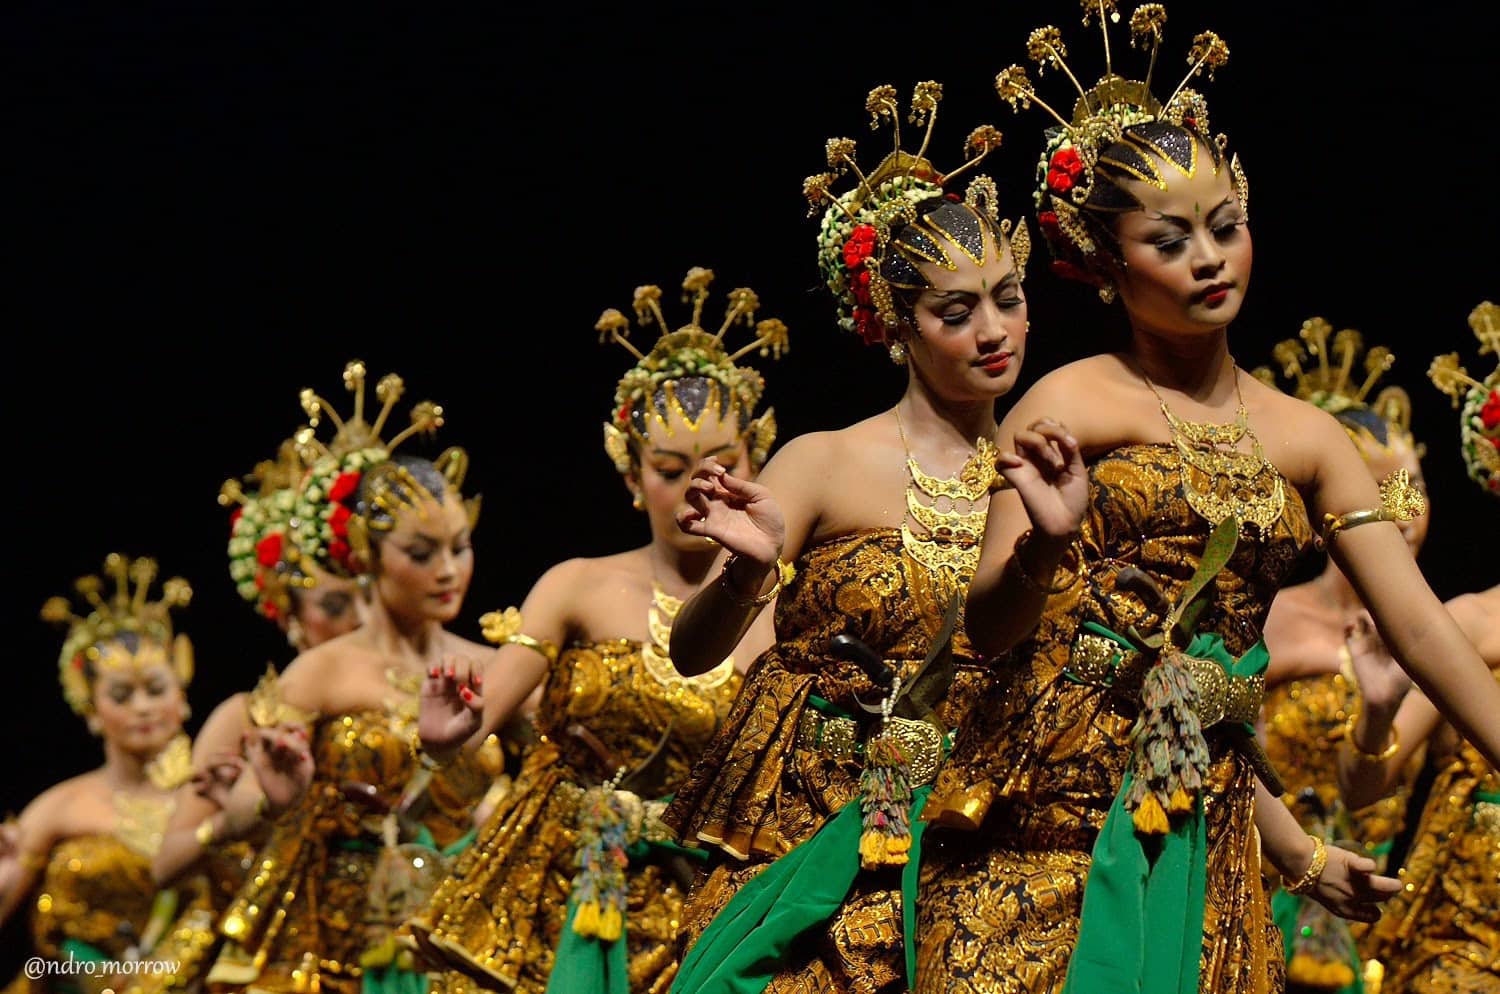 serimpi danse java indonesie panorama